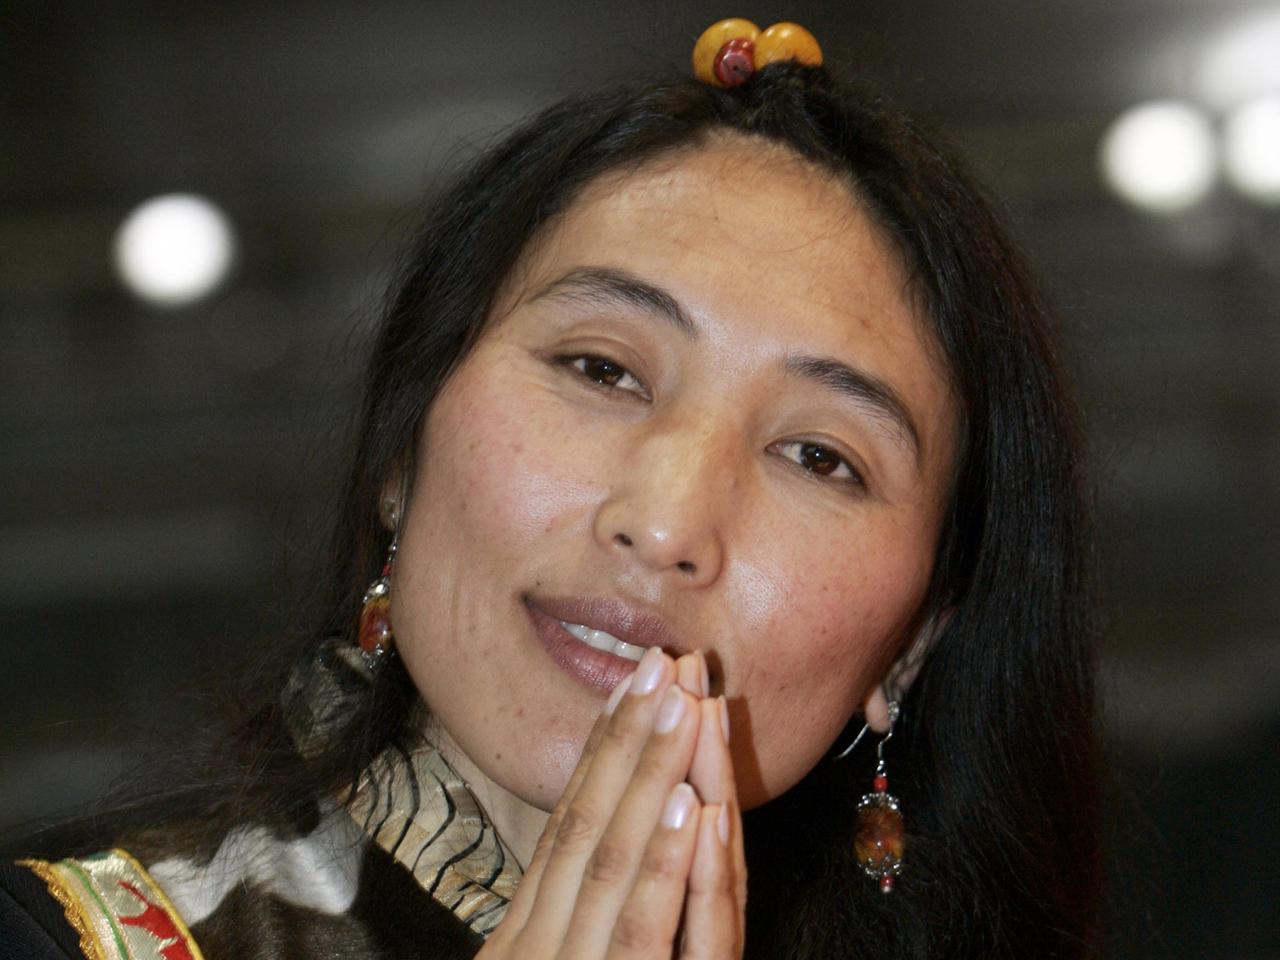 Die tibetanische Sängerin und Autorin Soname Yangchen auf der Internationalen Frankfurter Buchmesse, aufgenommen am 20.10.2005. Foto: Frank May